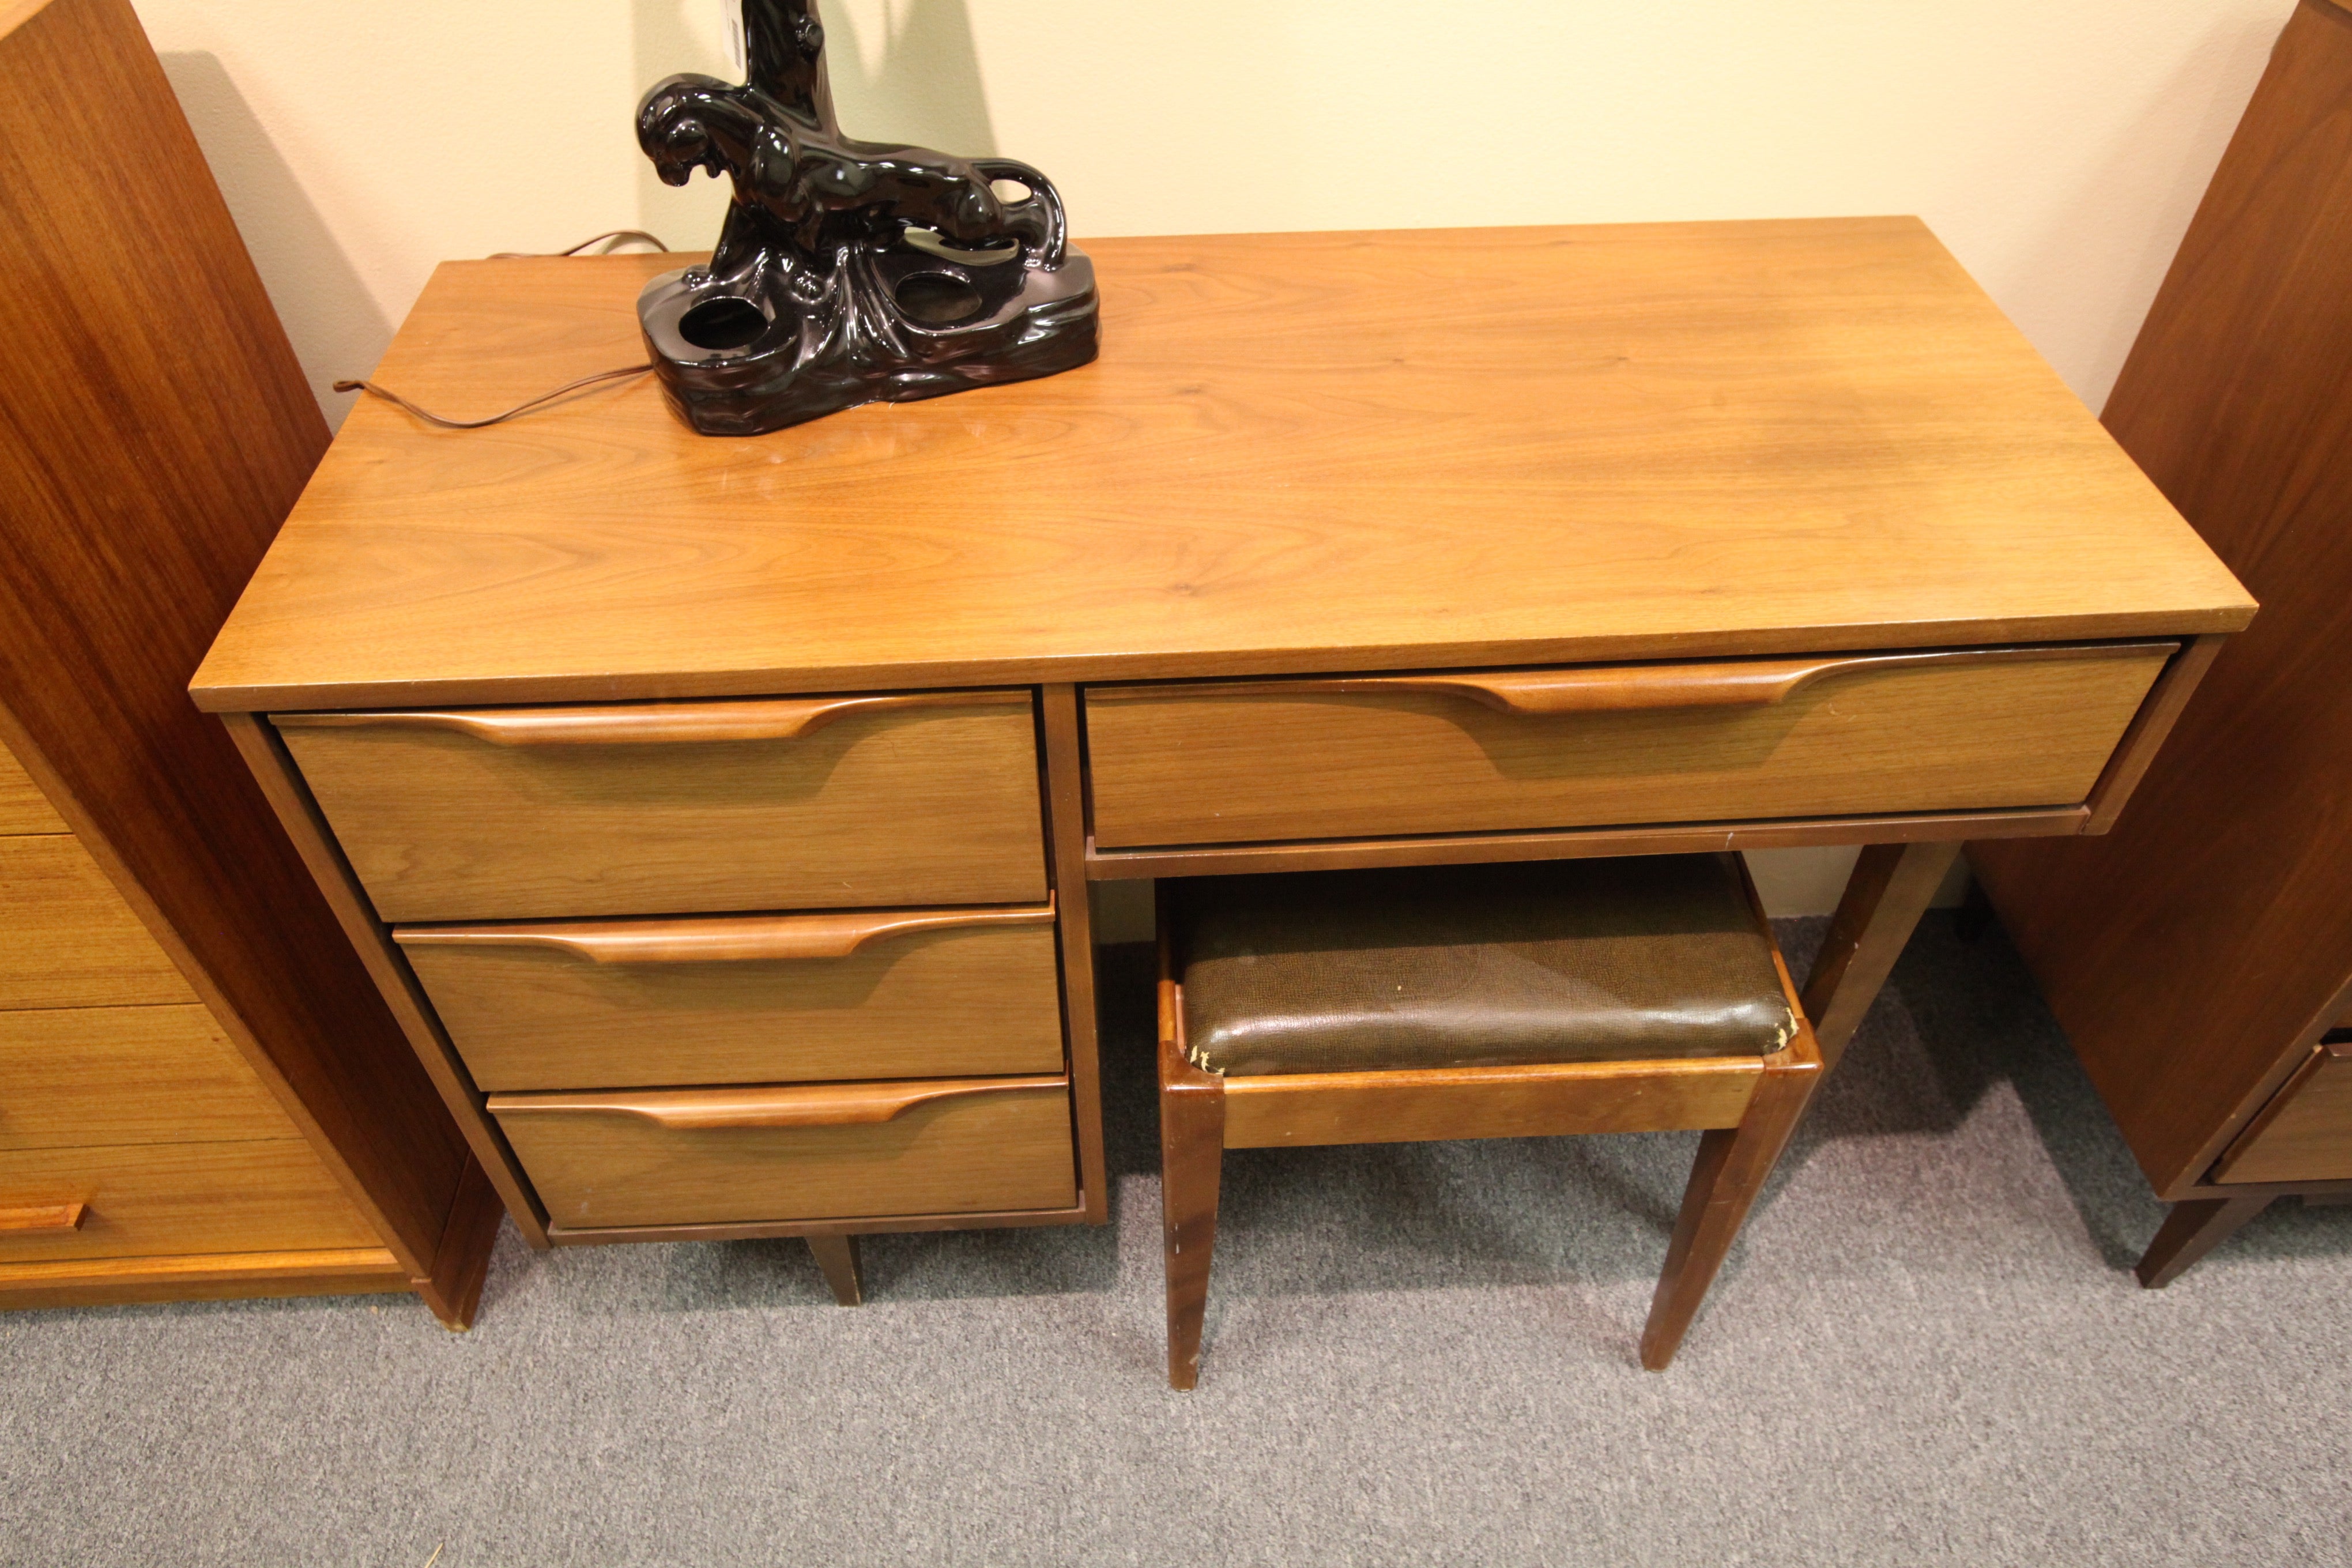 Small Walnut Desk w/ stool (42"L x 31"H x 18"D)